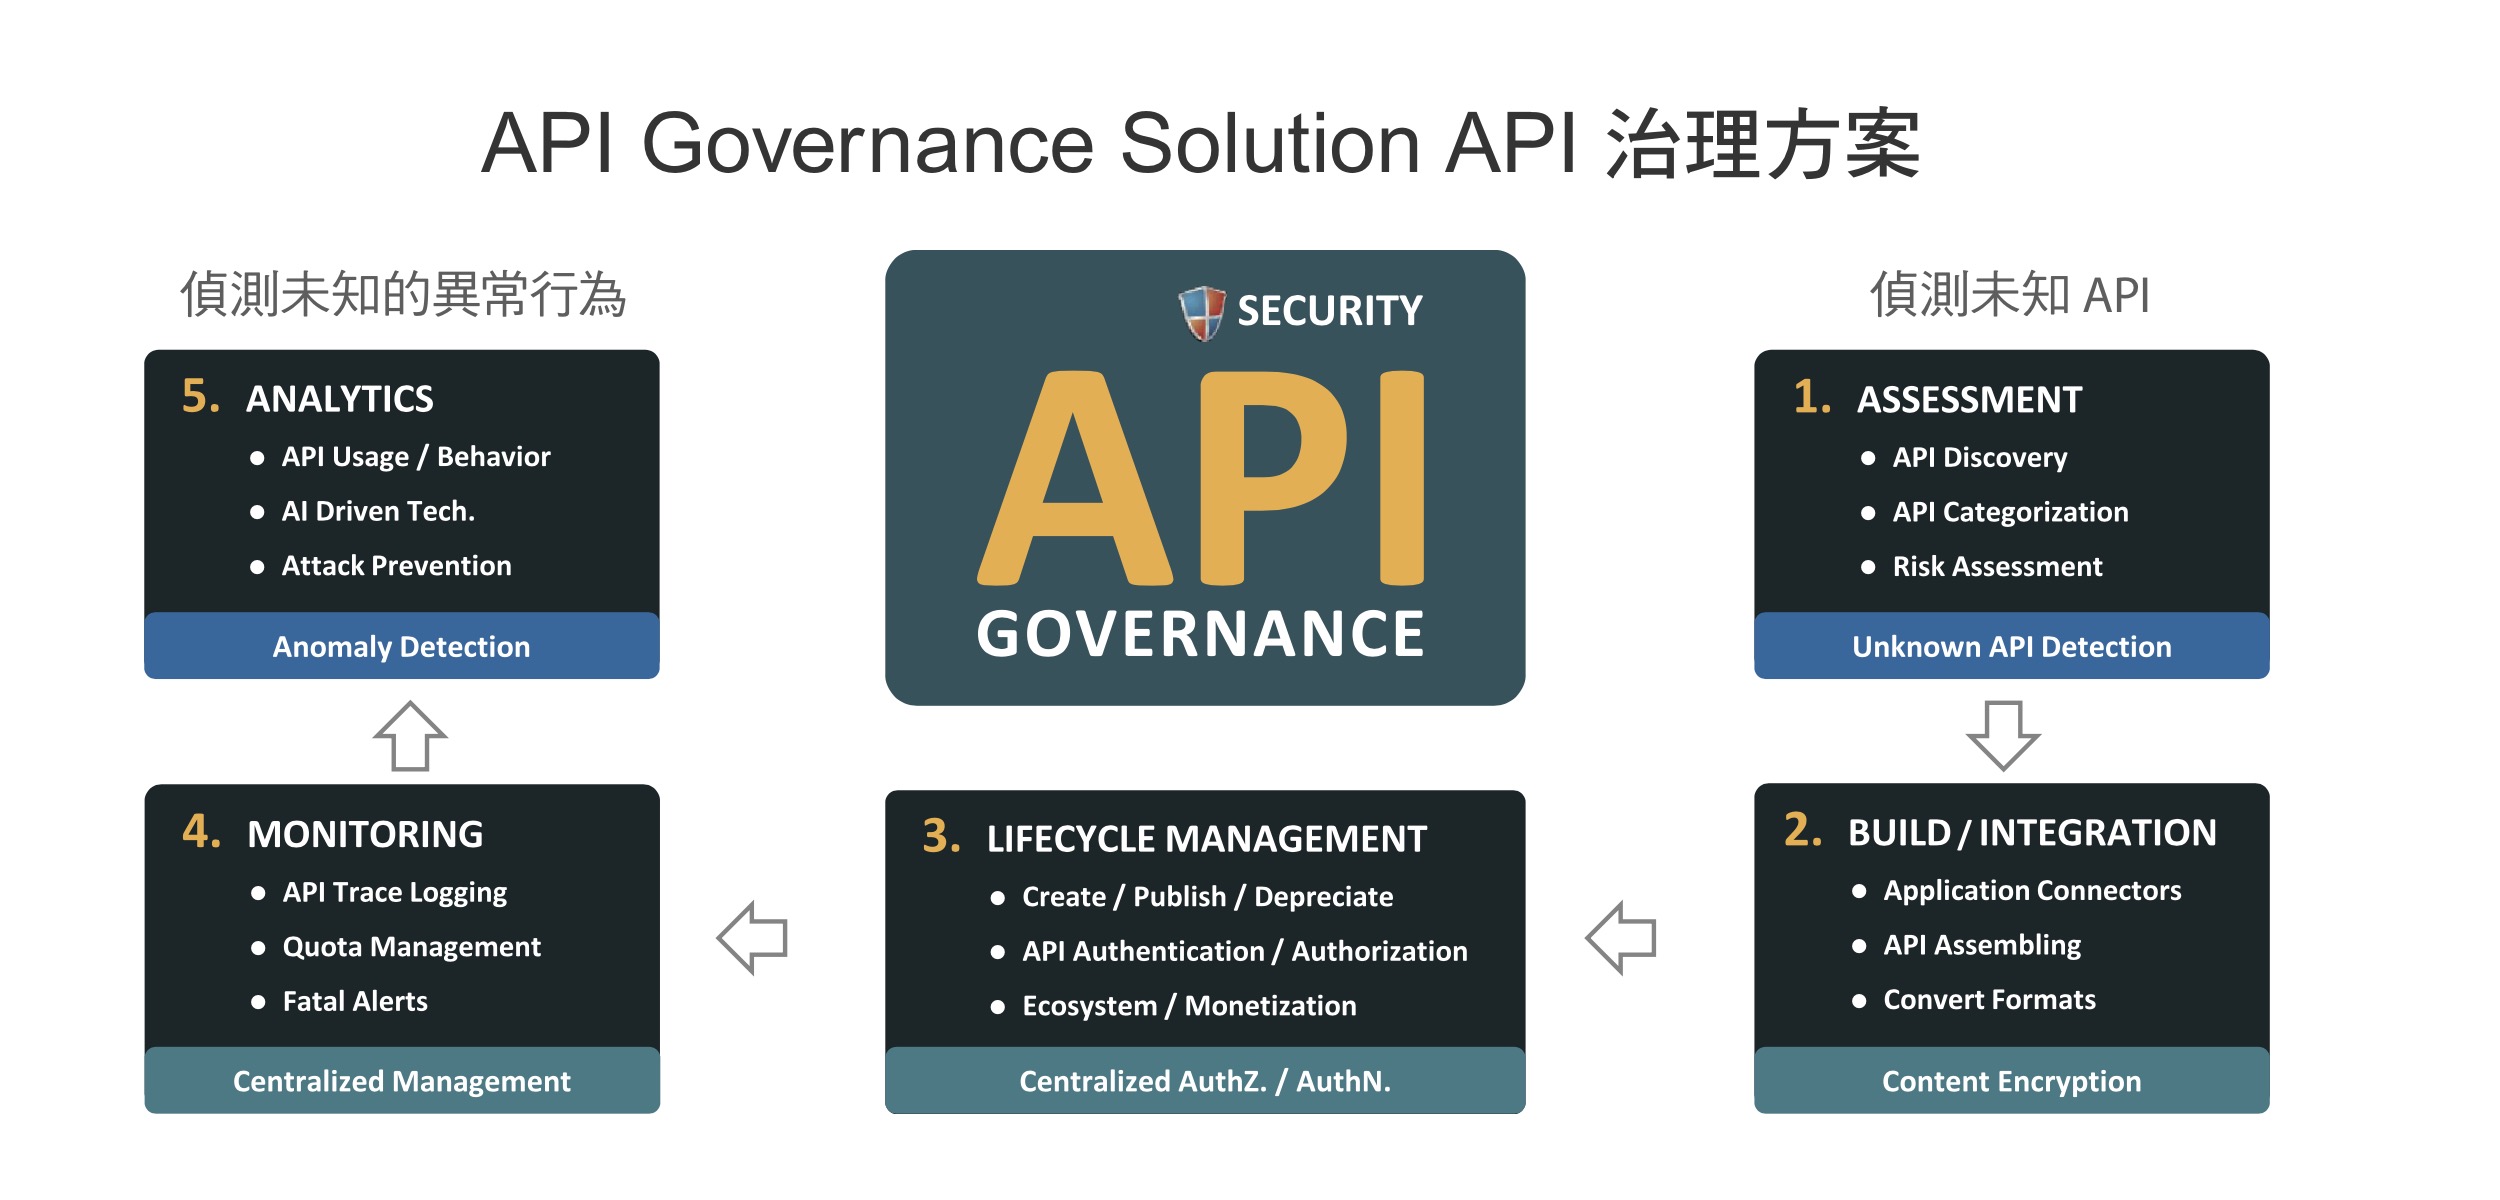 API Governance Solution API 治理方案